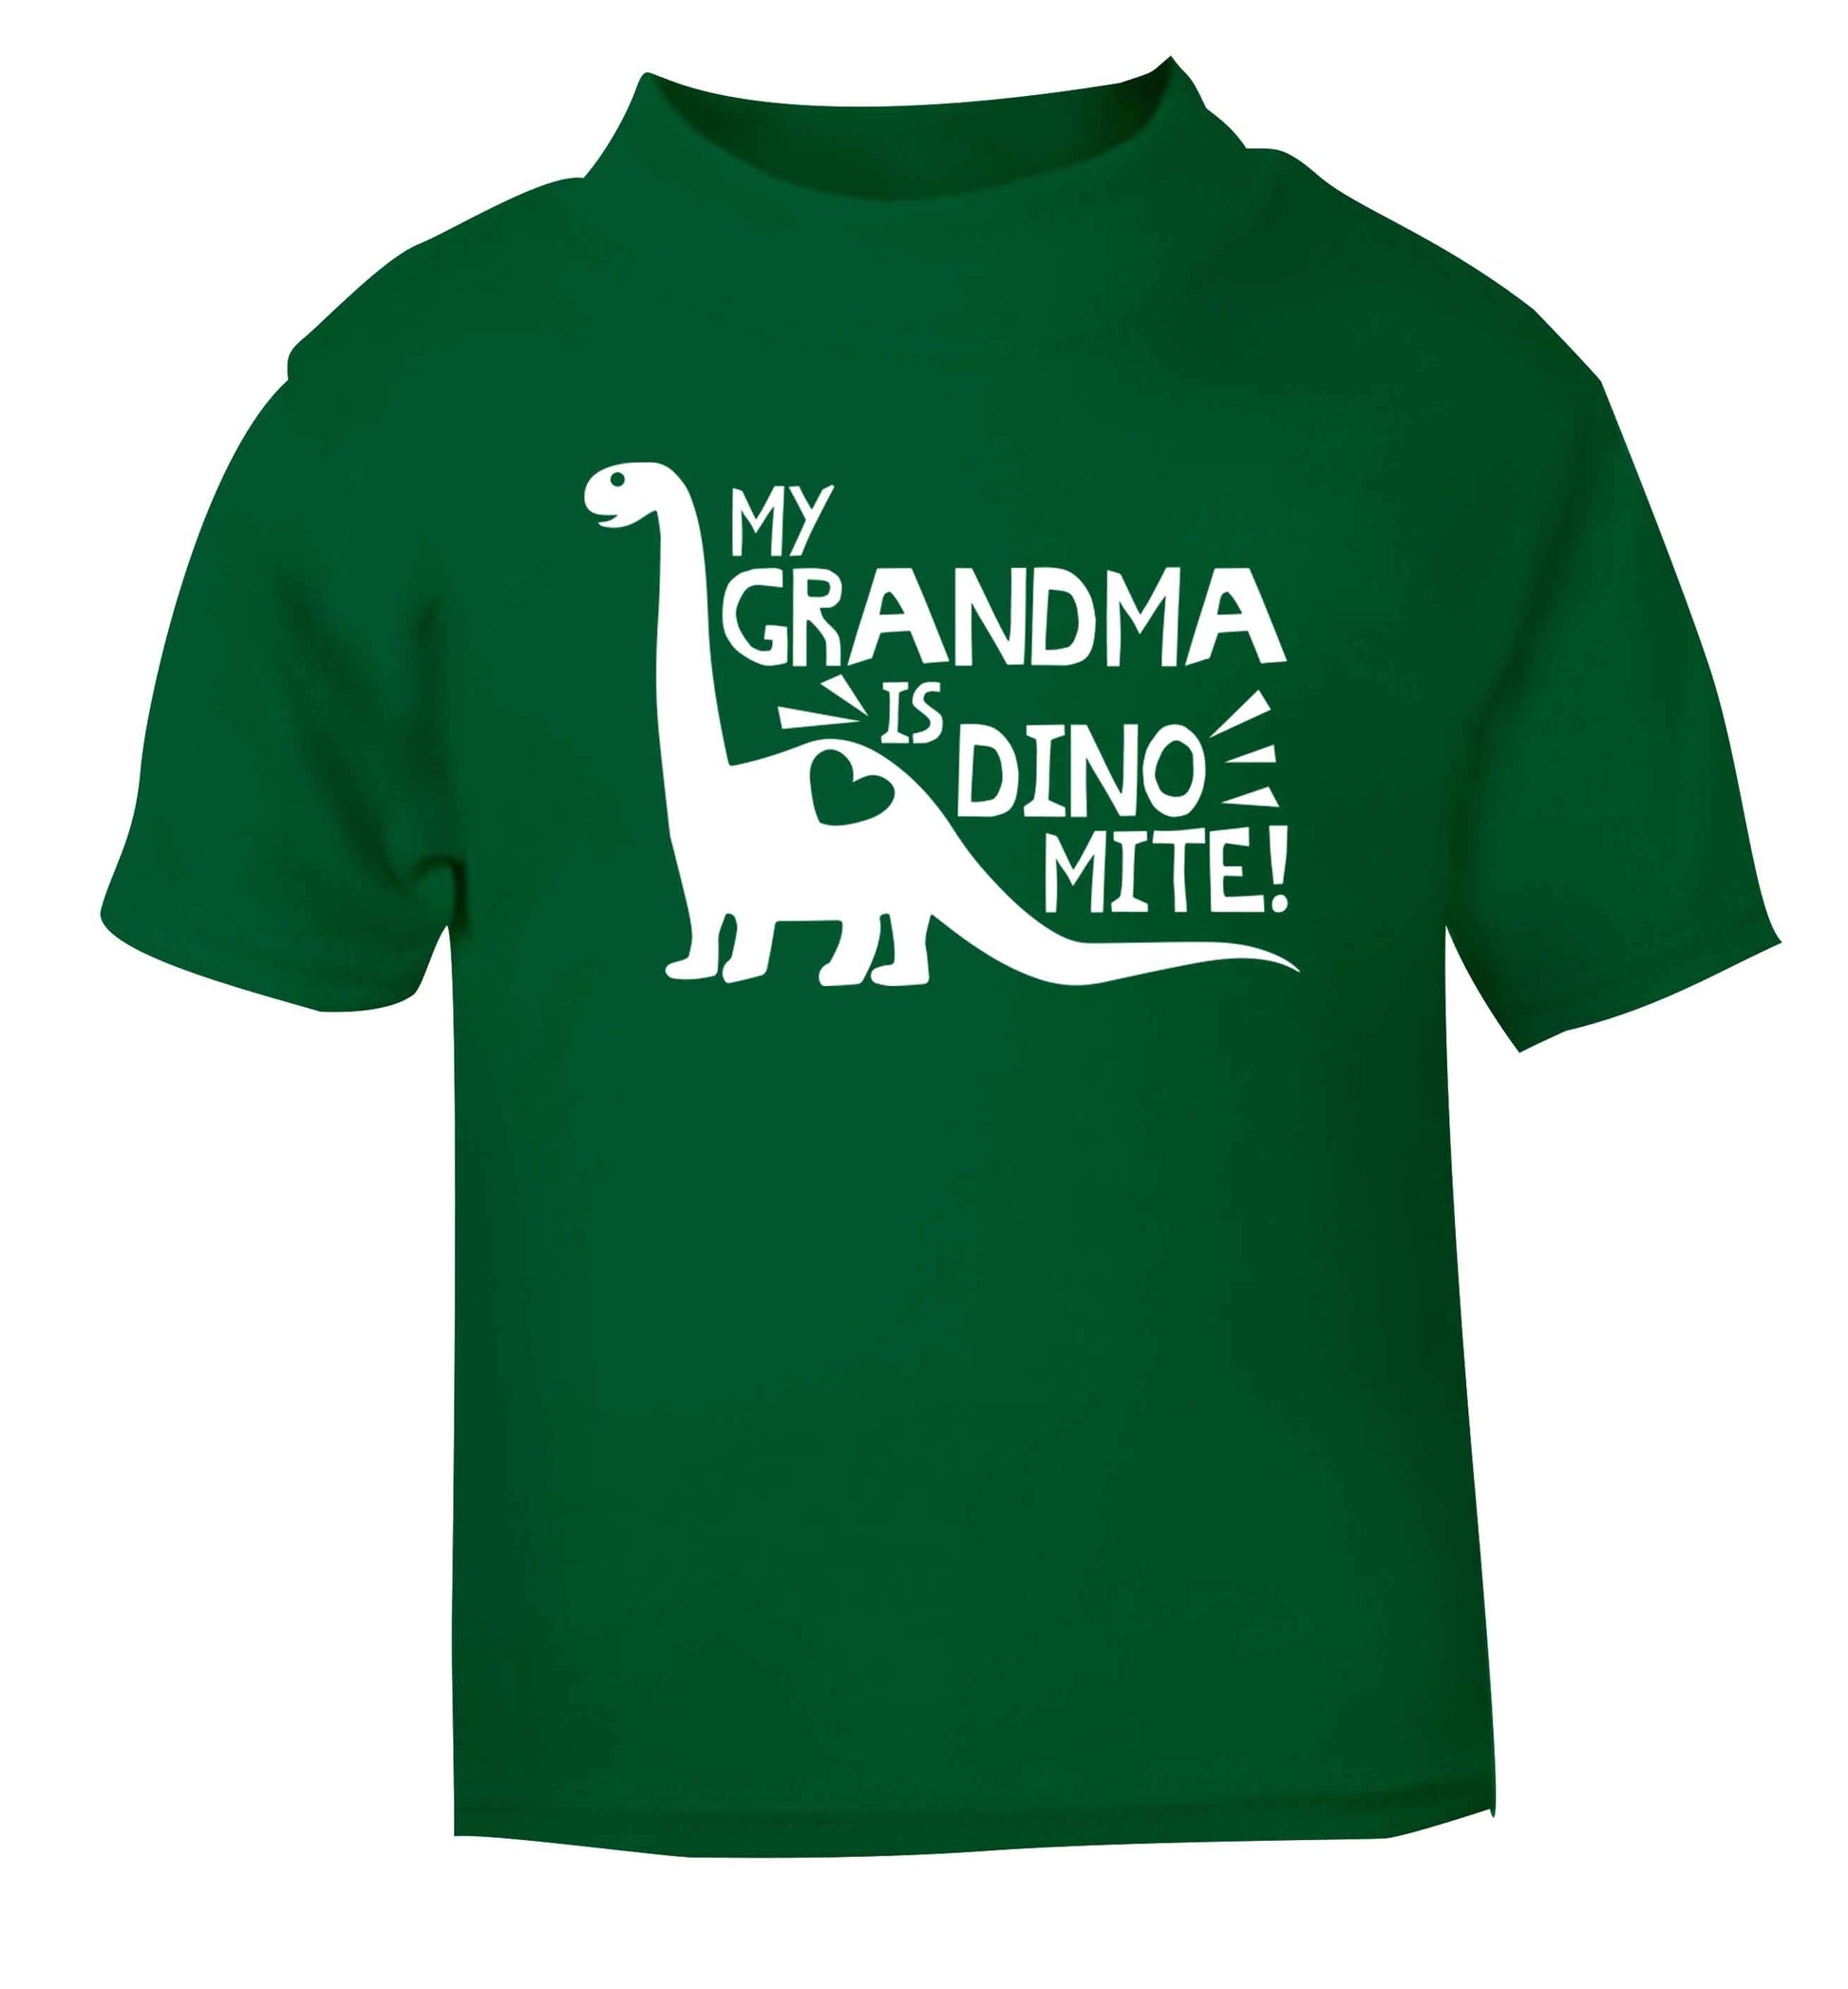 My grandma is dinomite! green Baby Toddler Tshirt 2 Years